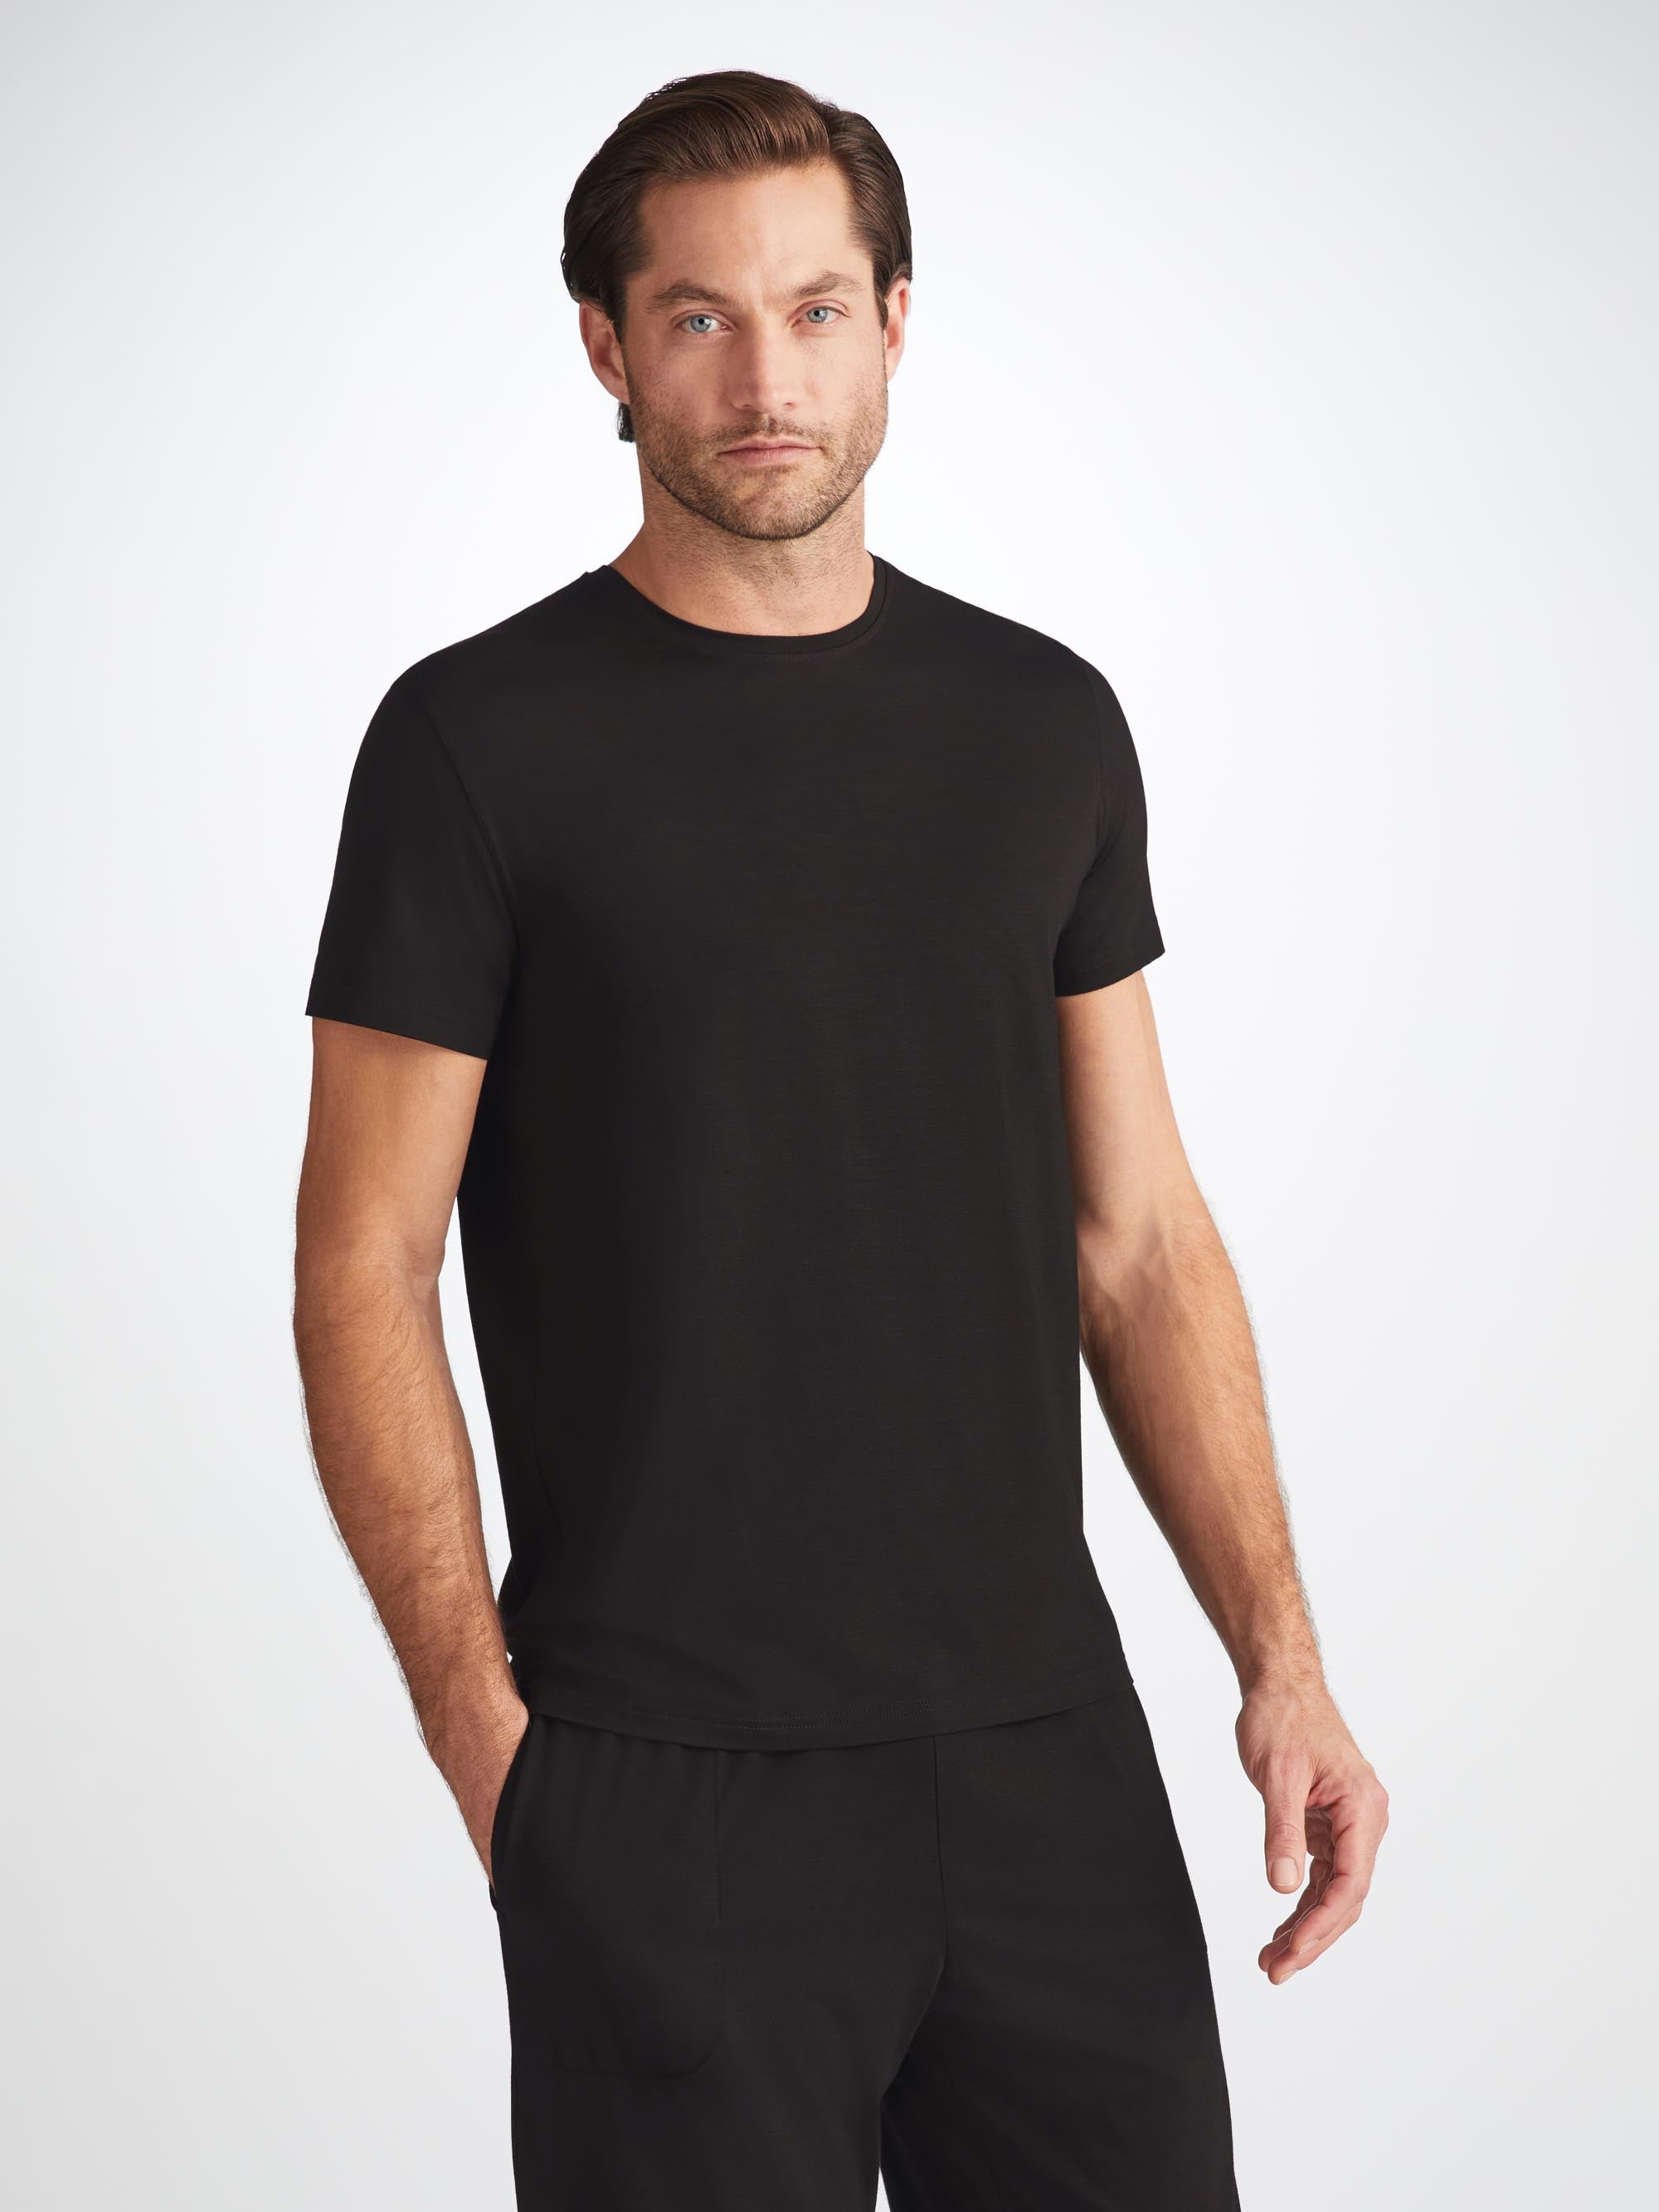 Men's T-Shirt Basel Micro Modal Stretch Black